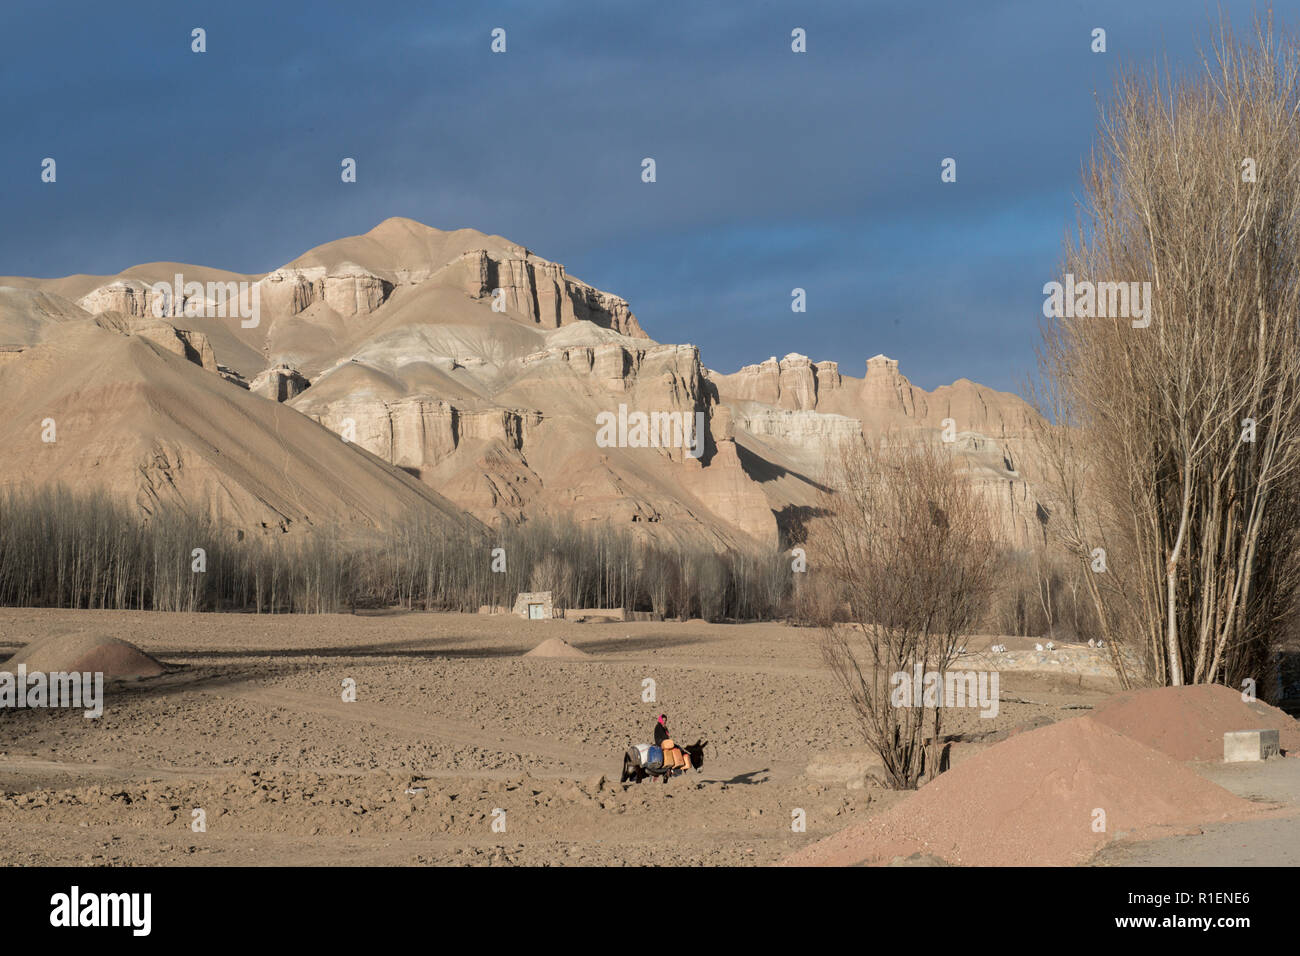 Abitante portando i bidoni di acqua su un asino al tramonto, con alberi e marrone e secca montagne sullo sfondo, nella provincia di Mazar-i-Sharif, Afghanistan Foto Stock